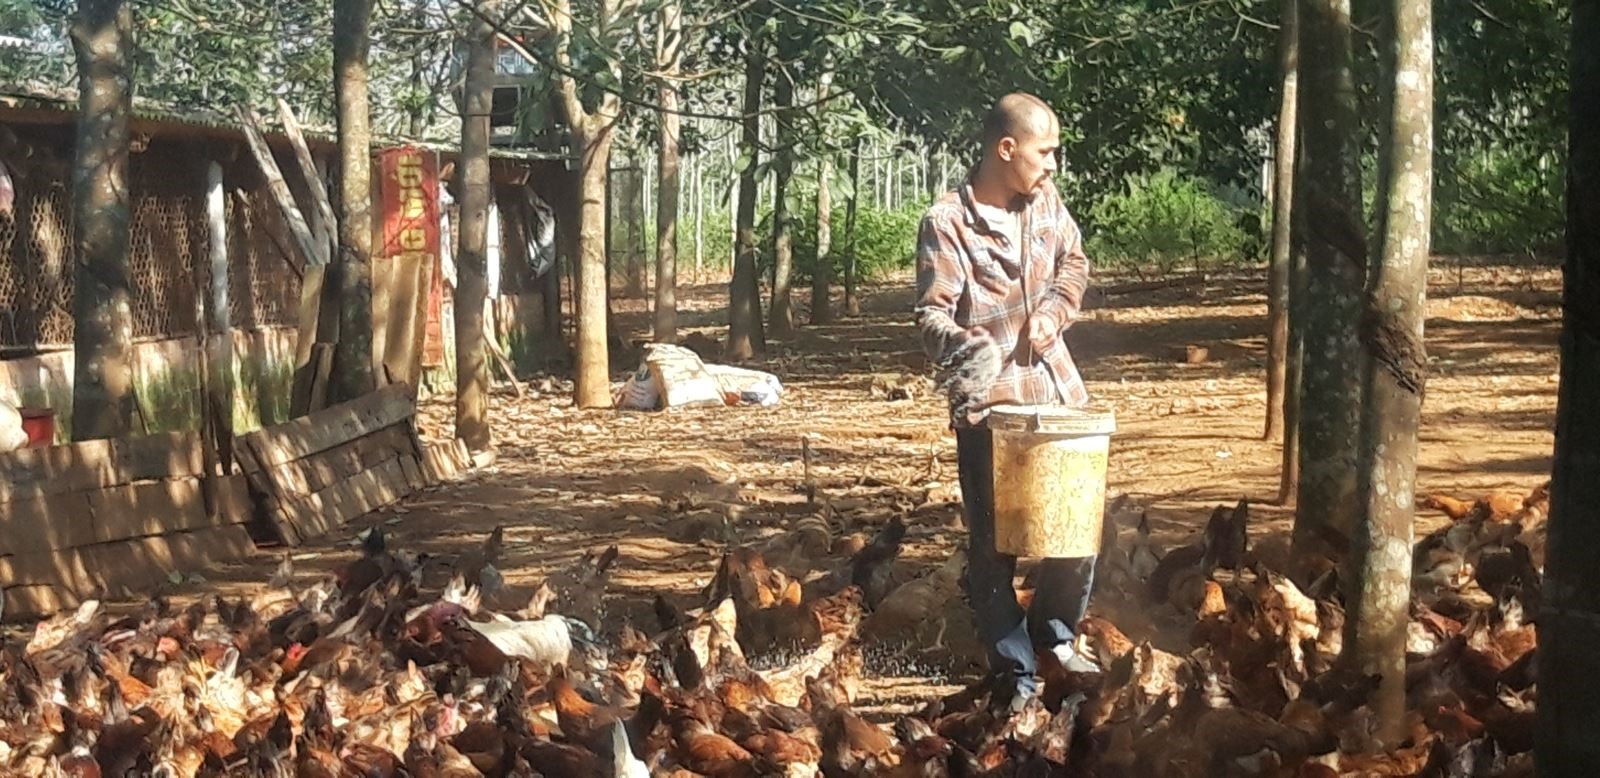 Trang trại gà Cùa của anh Phạm Hữu Phương ở làng Nghĩa Phong, xã Cam Nghĩa